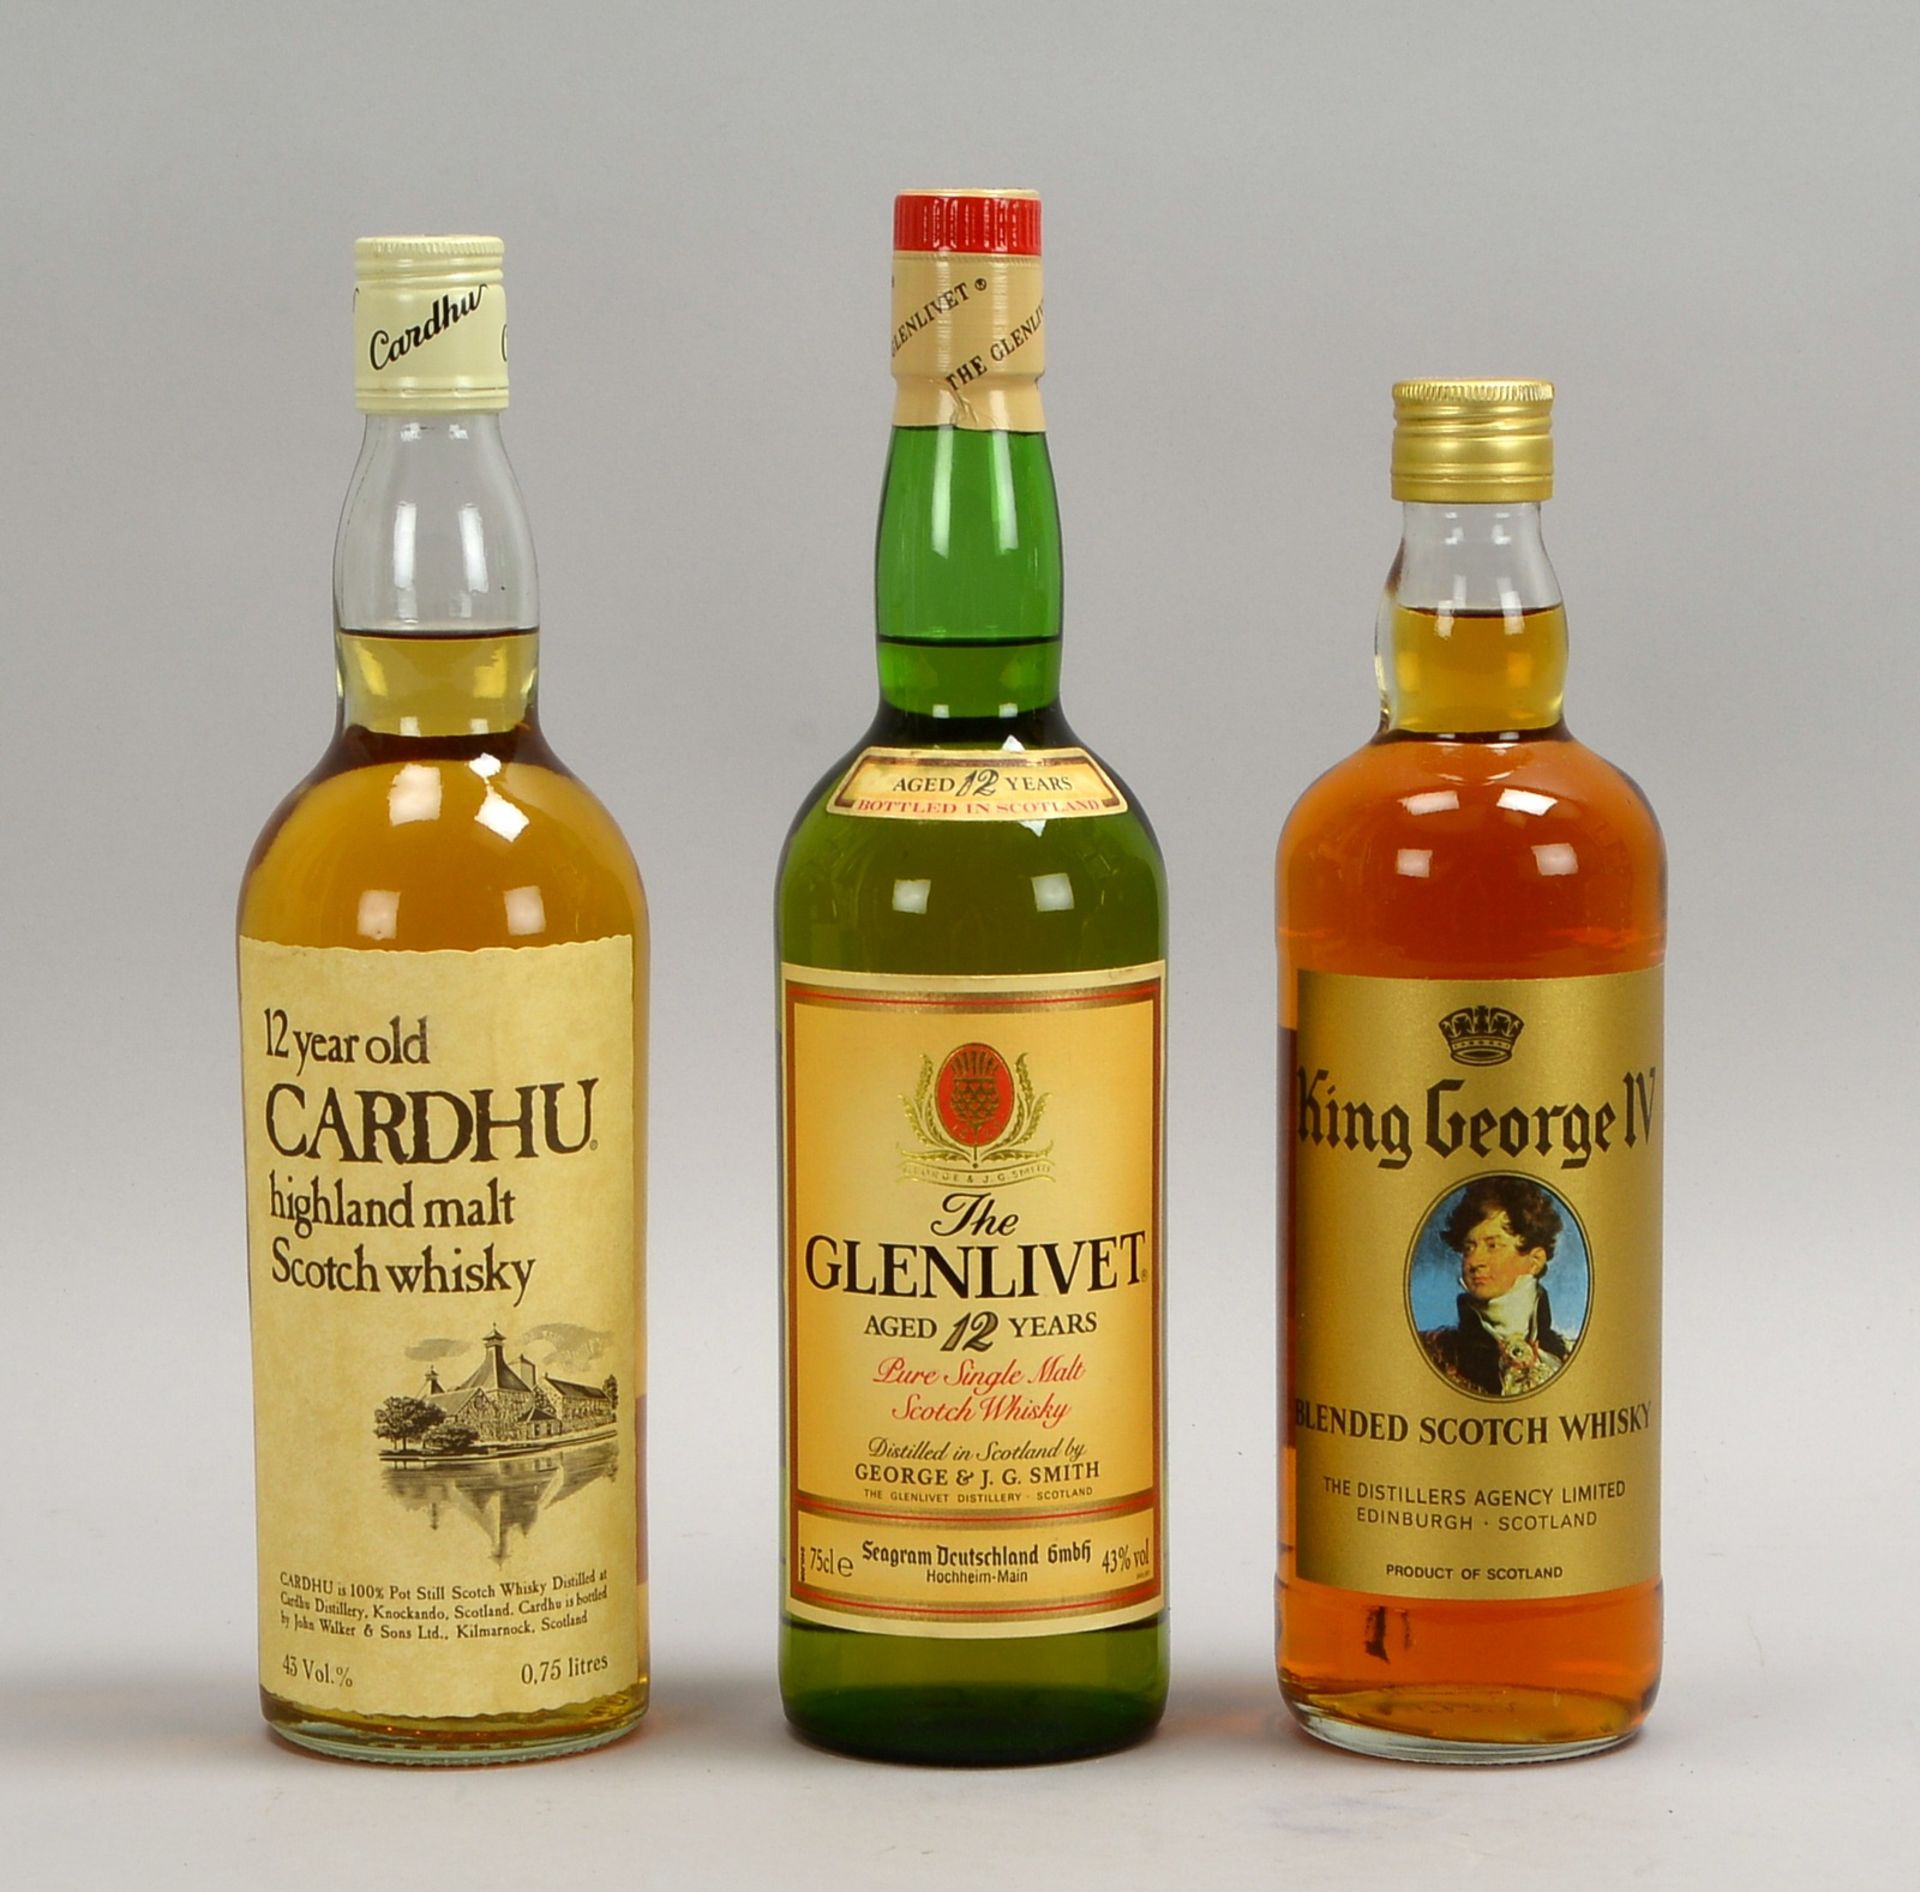 Sammler-Whiskys, 3 Fl.: Scotch Glenlivet, Cardhu Scotch, und King George IV